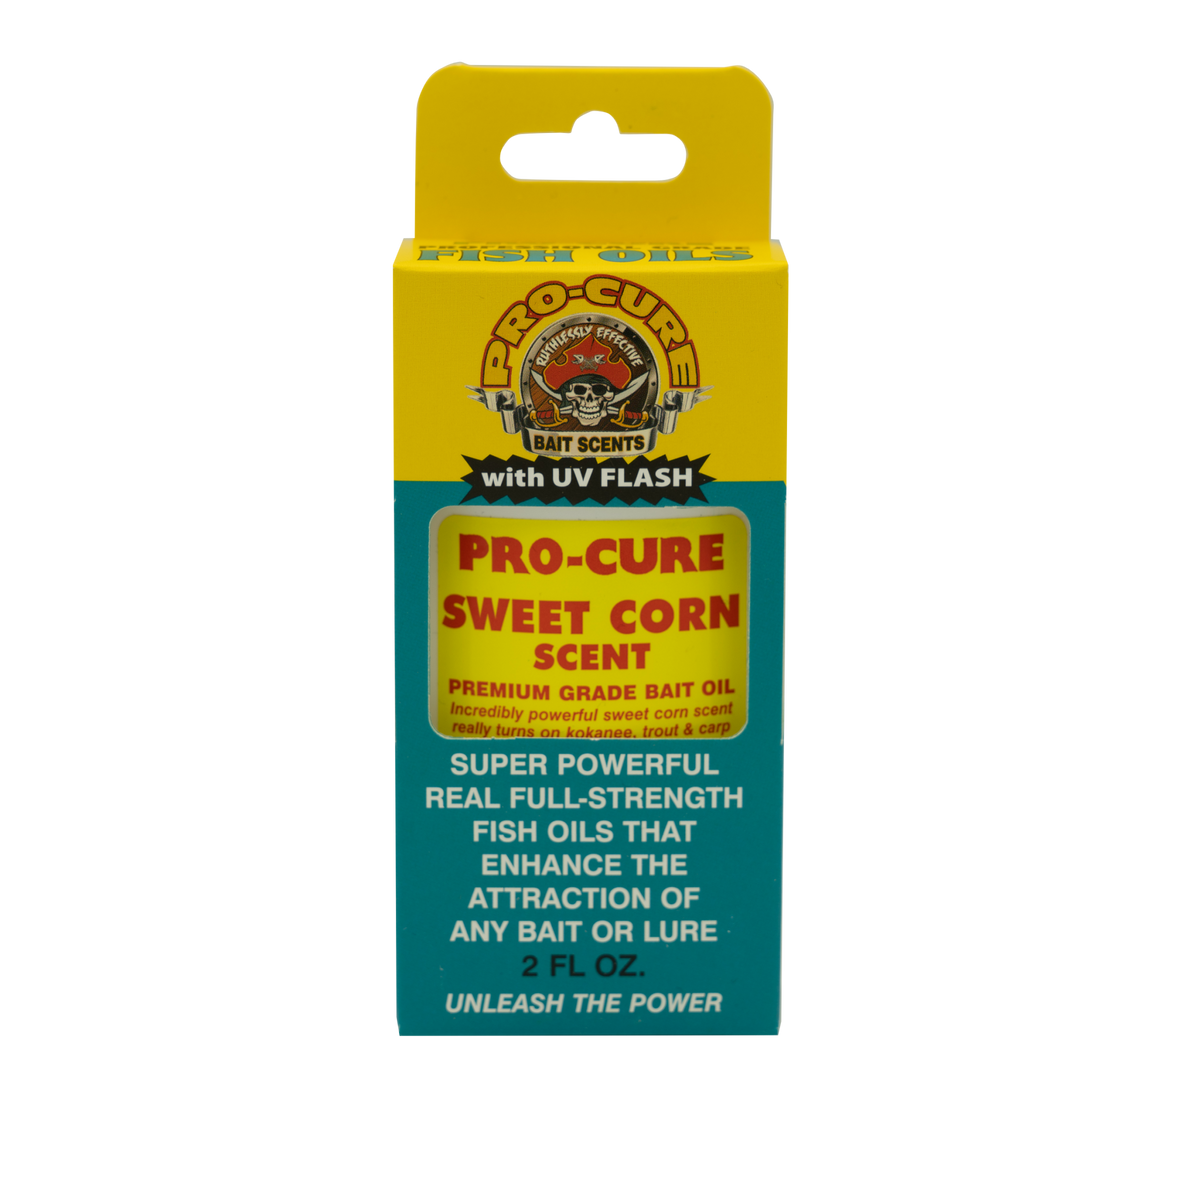 CORN BAIT OIL (SWEET) – Pro-Cure, Inc